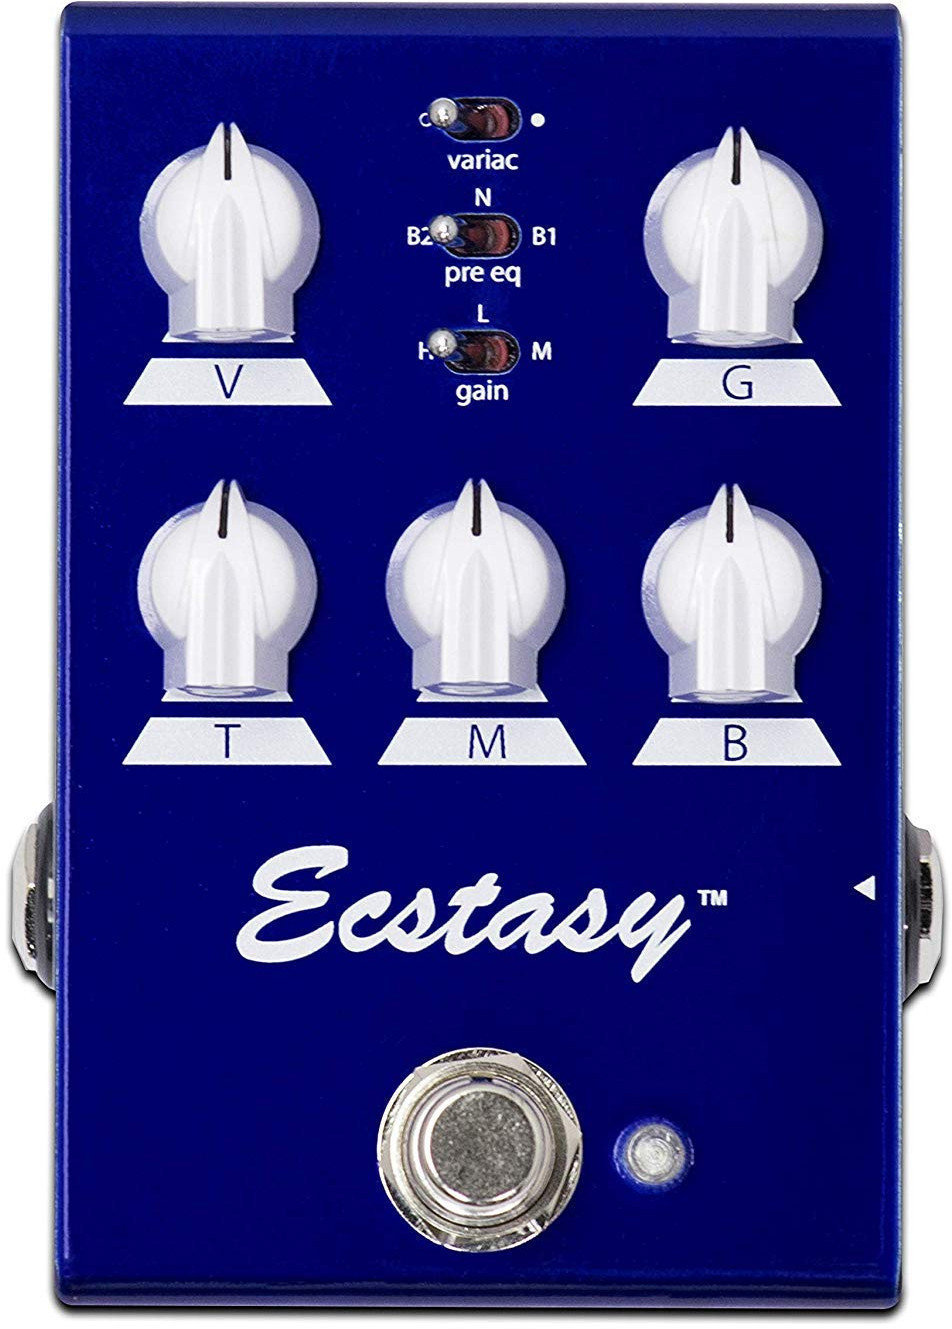 Guitar Effect Bogner Ecstasy Blue Mini